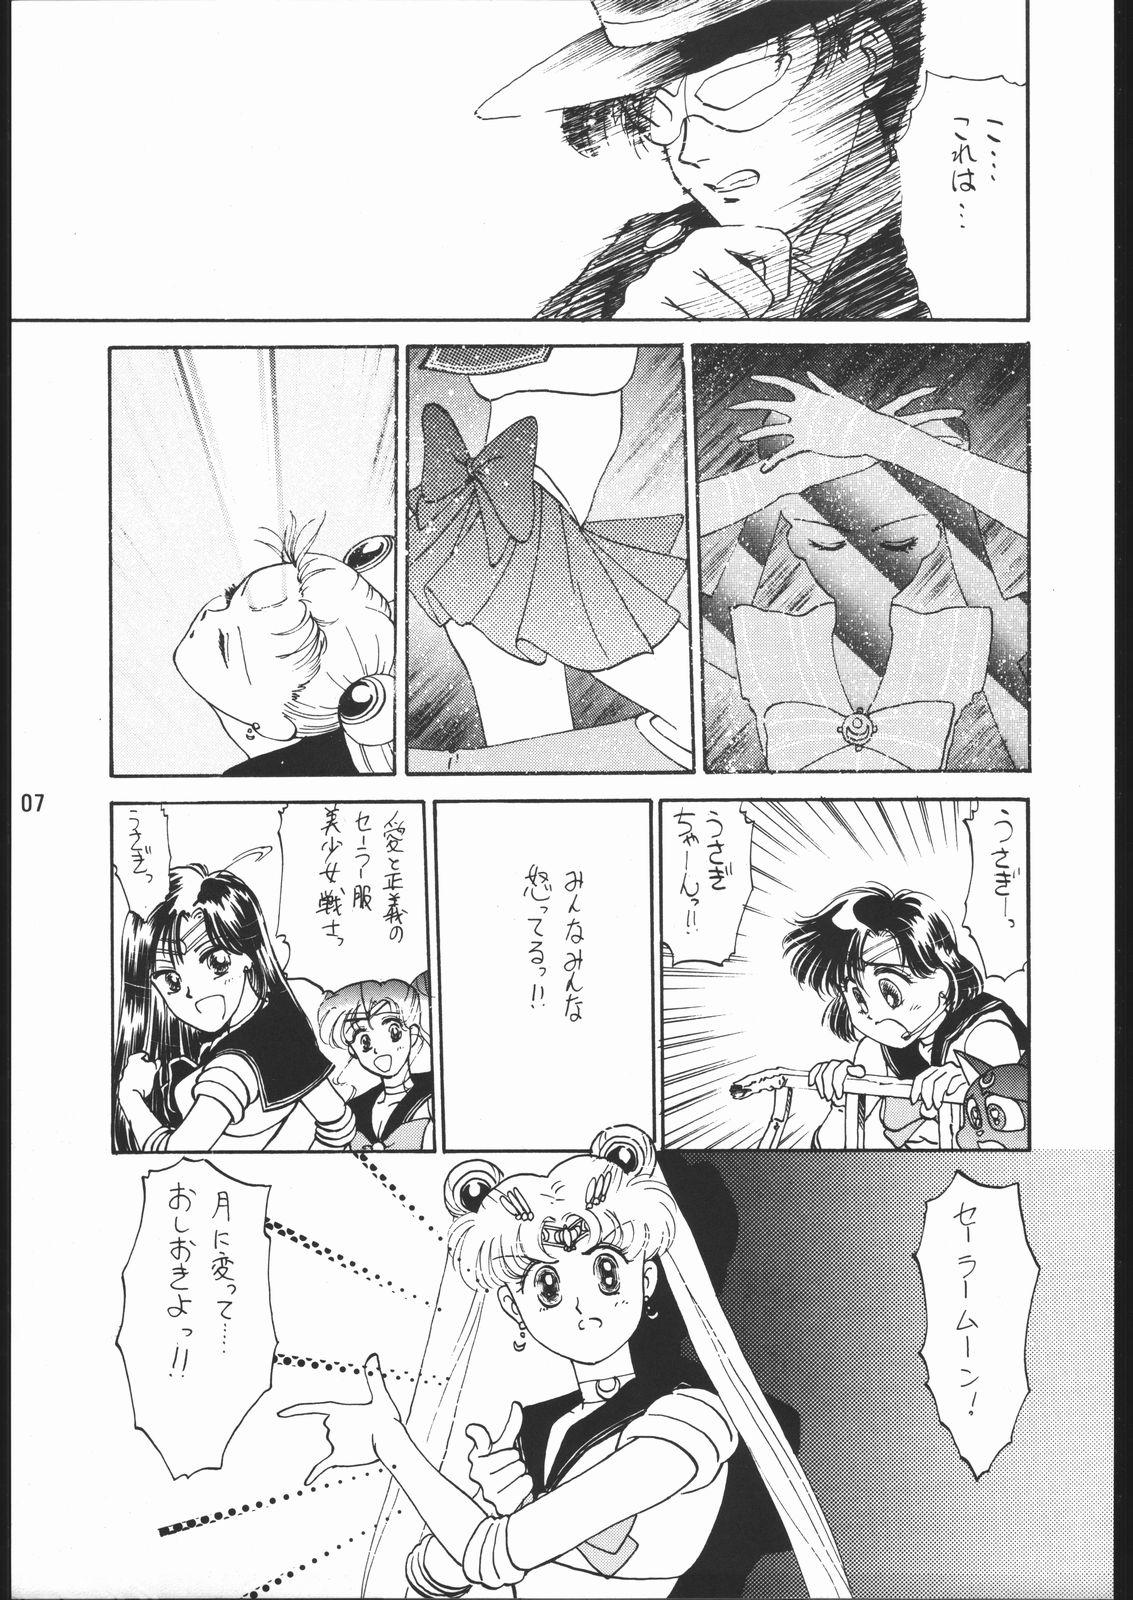 Hindi うさぎがピョン!! - Sailor moon Teen Porn - Page 6